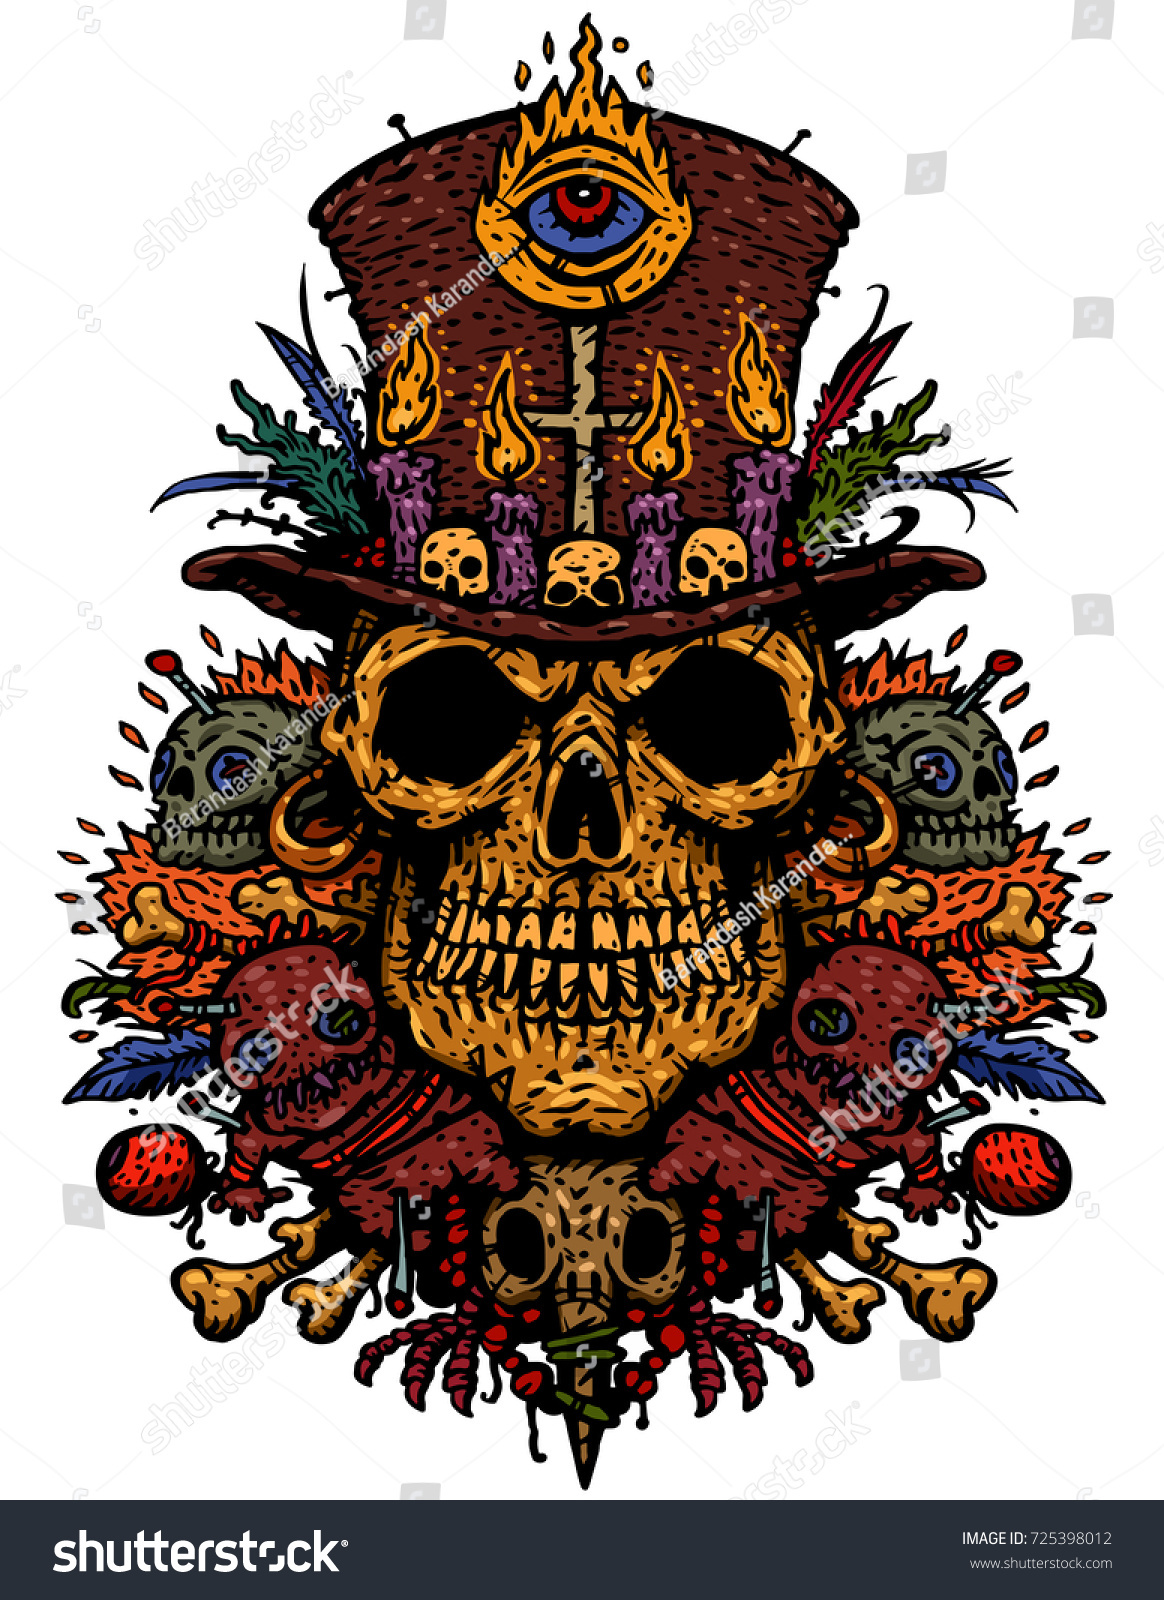 ブードゥー教のキャラクターは 呪術品 ブードゥー教の人形 羽 針 鳥の頭蓋を持つ司祭の頭蓋骨です Tシャツのベクターイラスト のベクター画像素材 ロイヤリティフリー